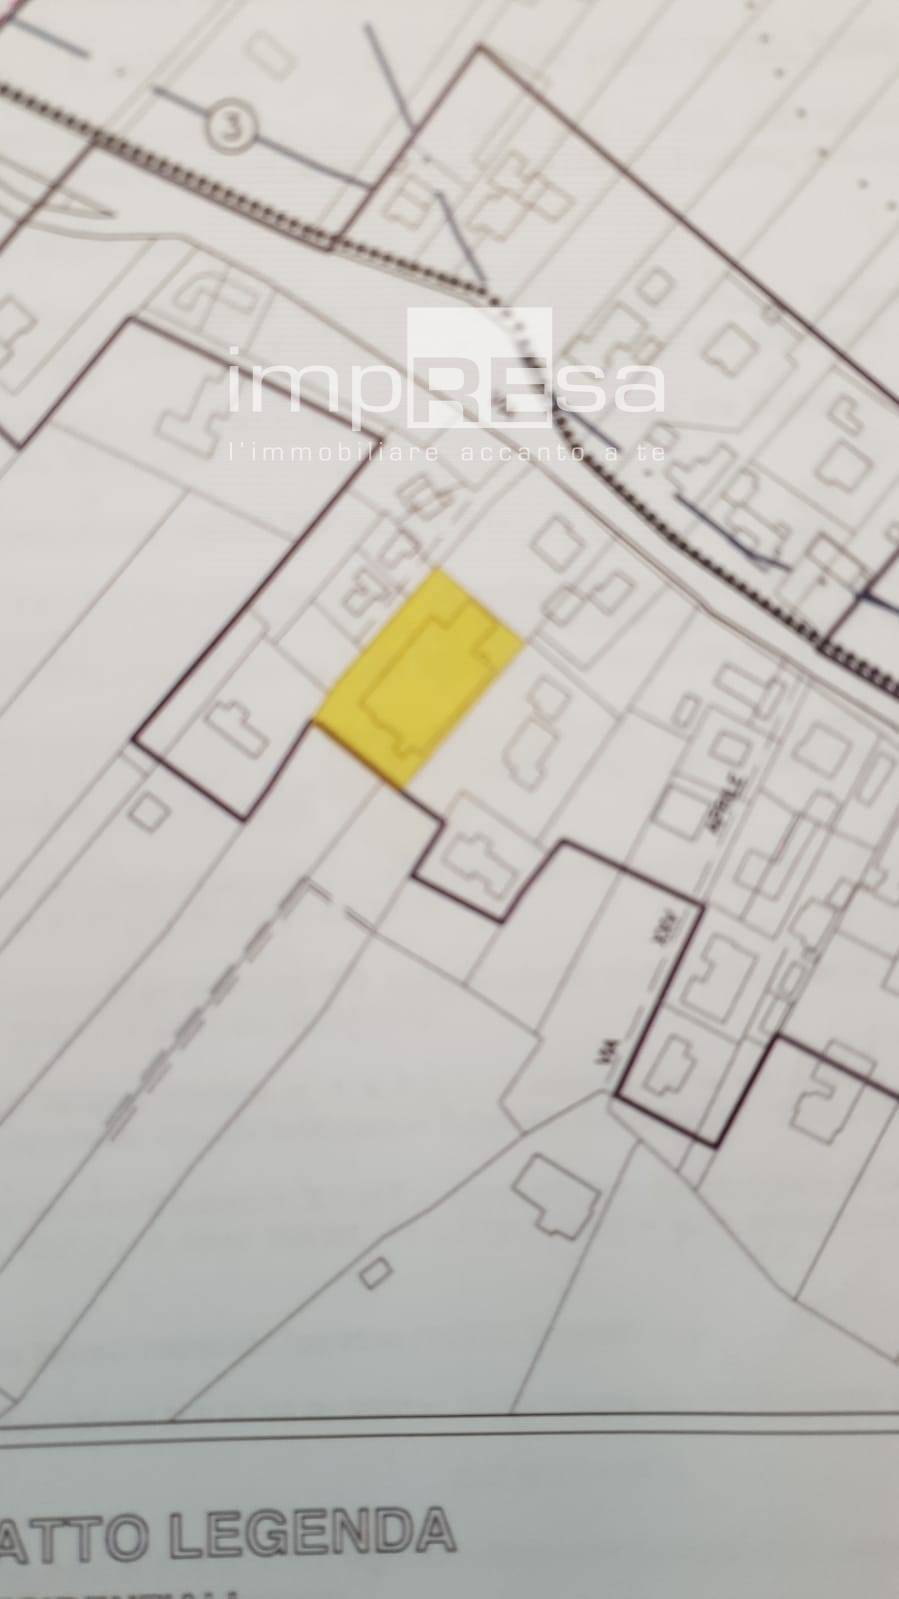 Terreno Edificabile Residenziale in vendita a Martellago, 9999 locali, prezzo € 360.000 | PortaleAgenzieImmobiliari.it